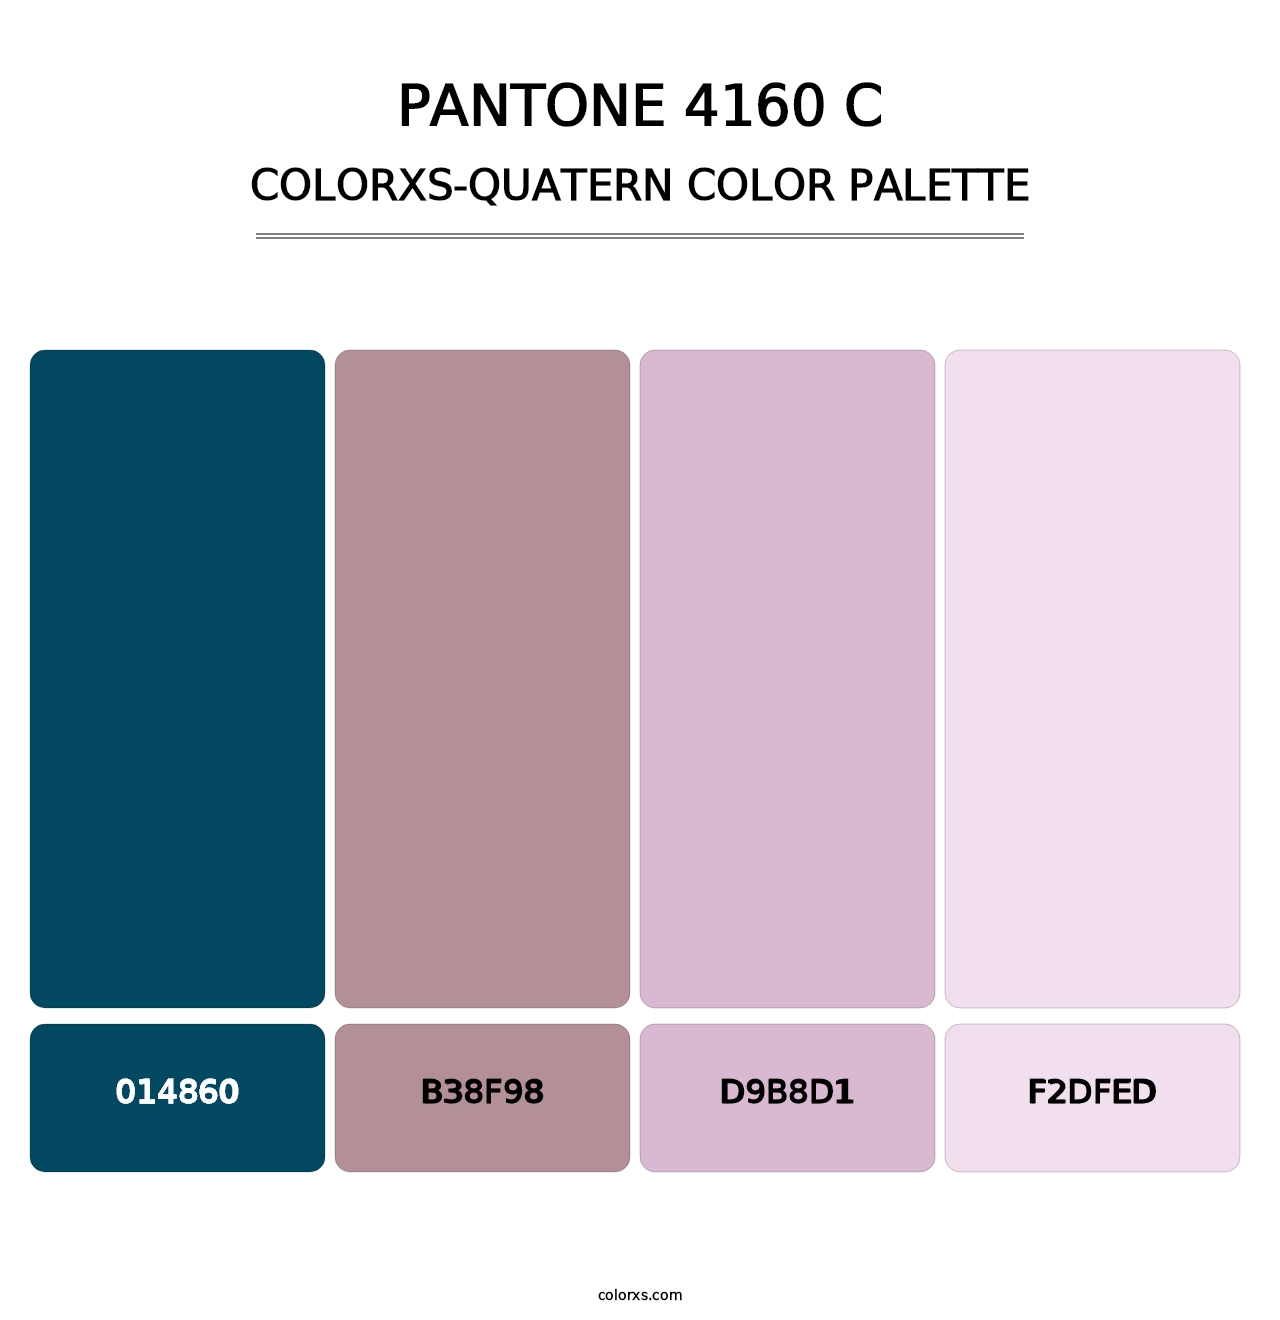 PANTONE 4160 C - Colorxs Quatern Palette